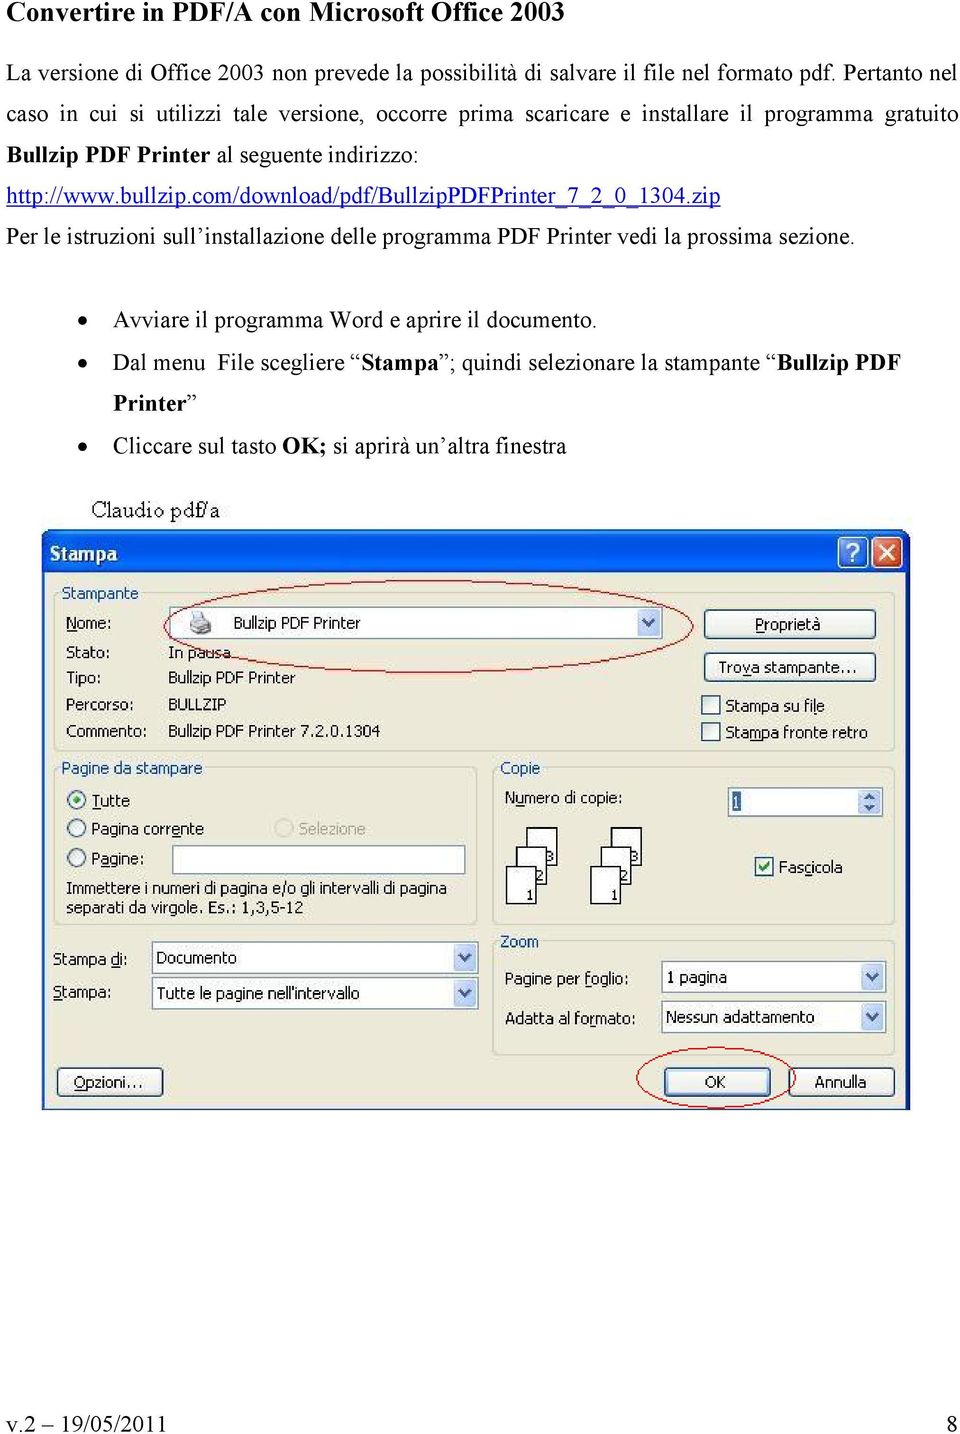 http://www.bullzip.com/download/pdf/bullzippdfprinter_7_2_0_1304.zip Per le istruzioni sull installazione delle programma PDF Printer vedi la prossima sezione.